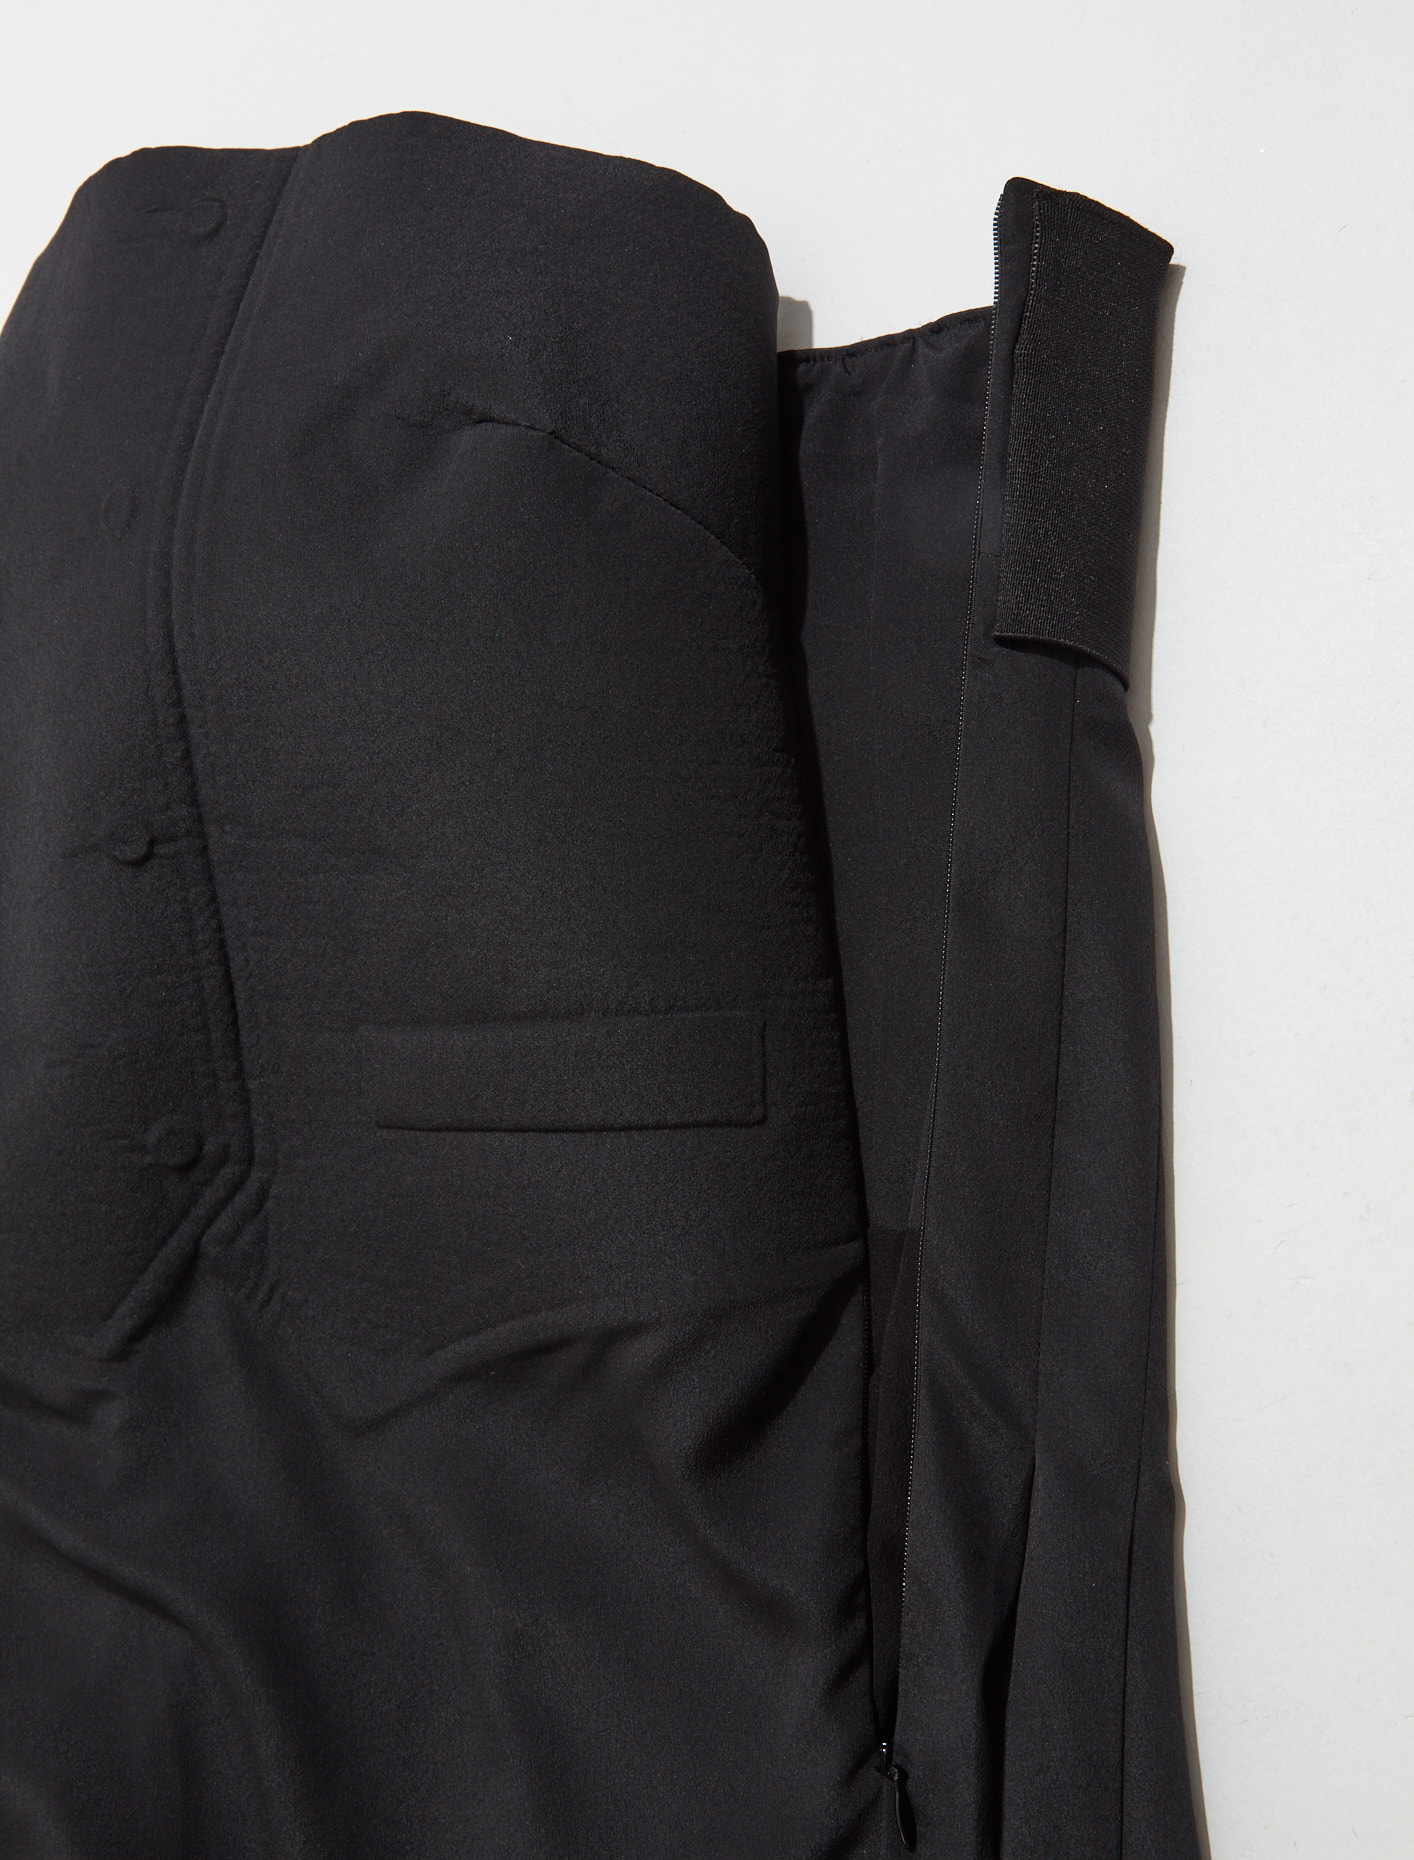 Maison Margiela Tuxedo Dress in Black | Voo Store Berlin | Worldwide ...